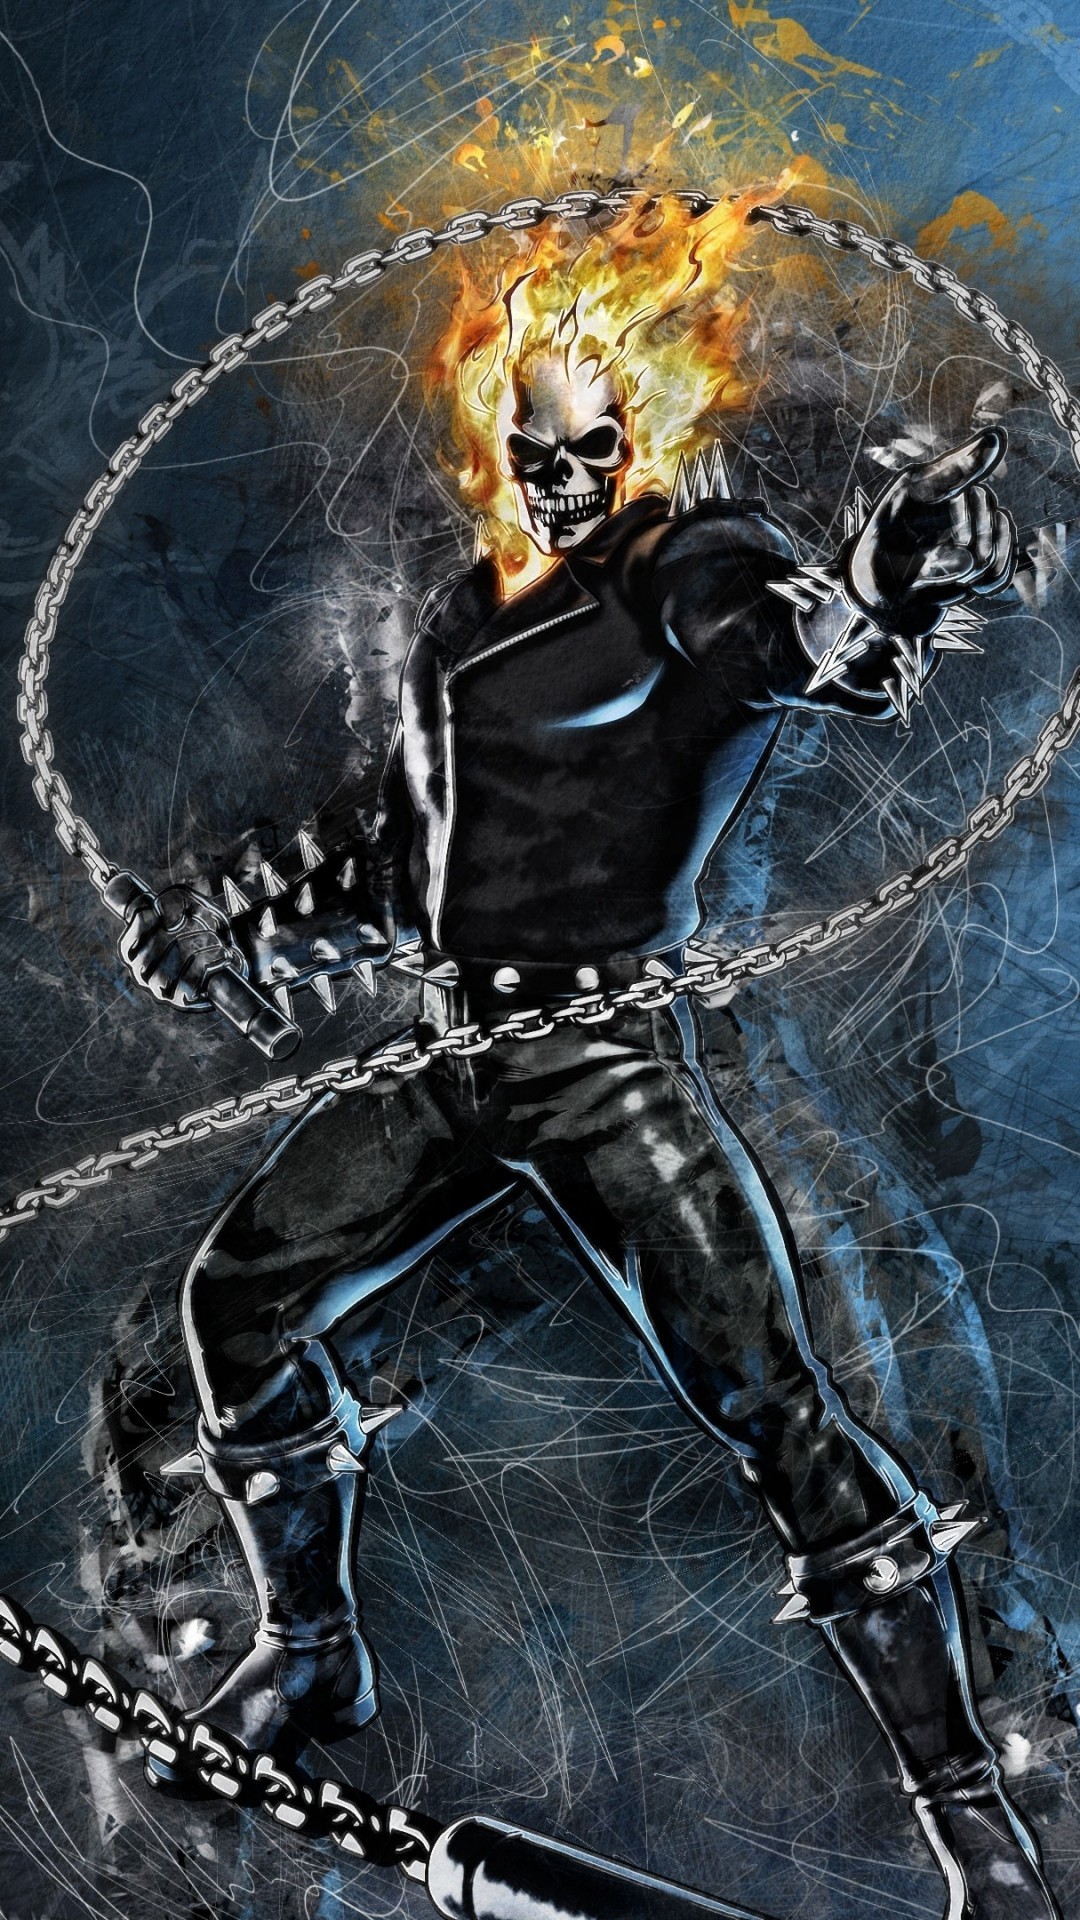 Ghost Rider, Chains, Skull, Digital Art - 1080x1920 Wallpaper 